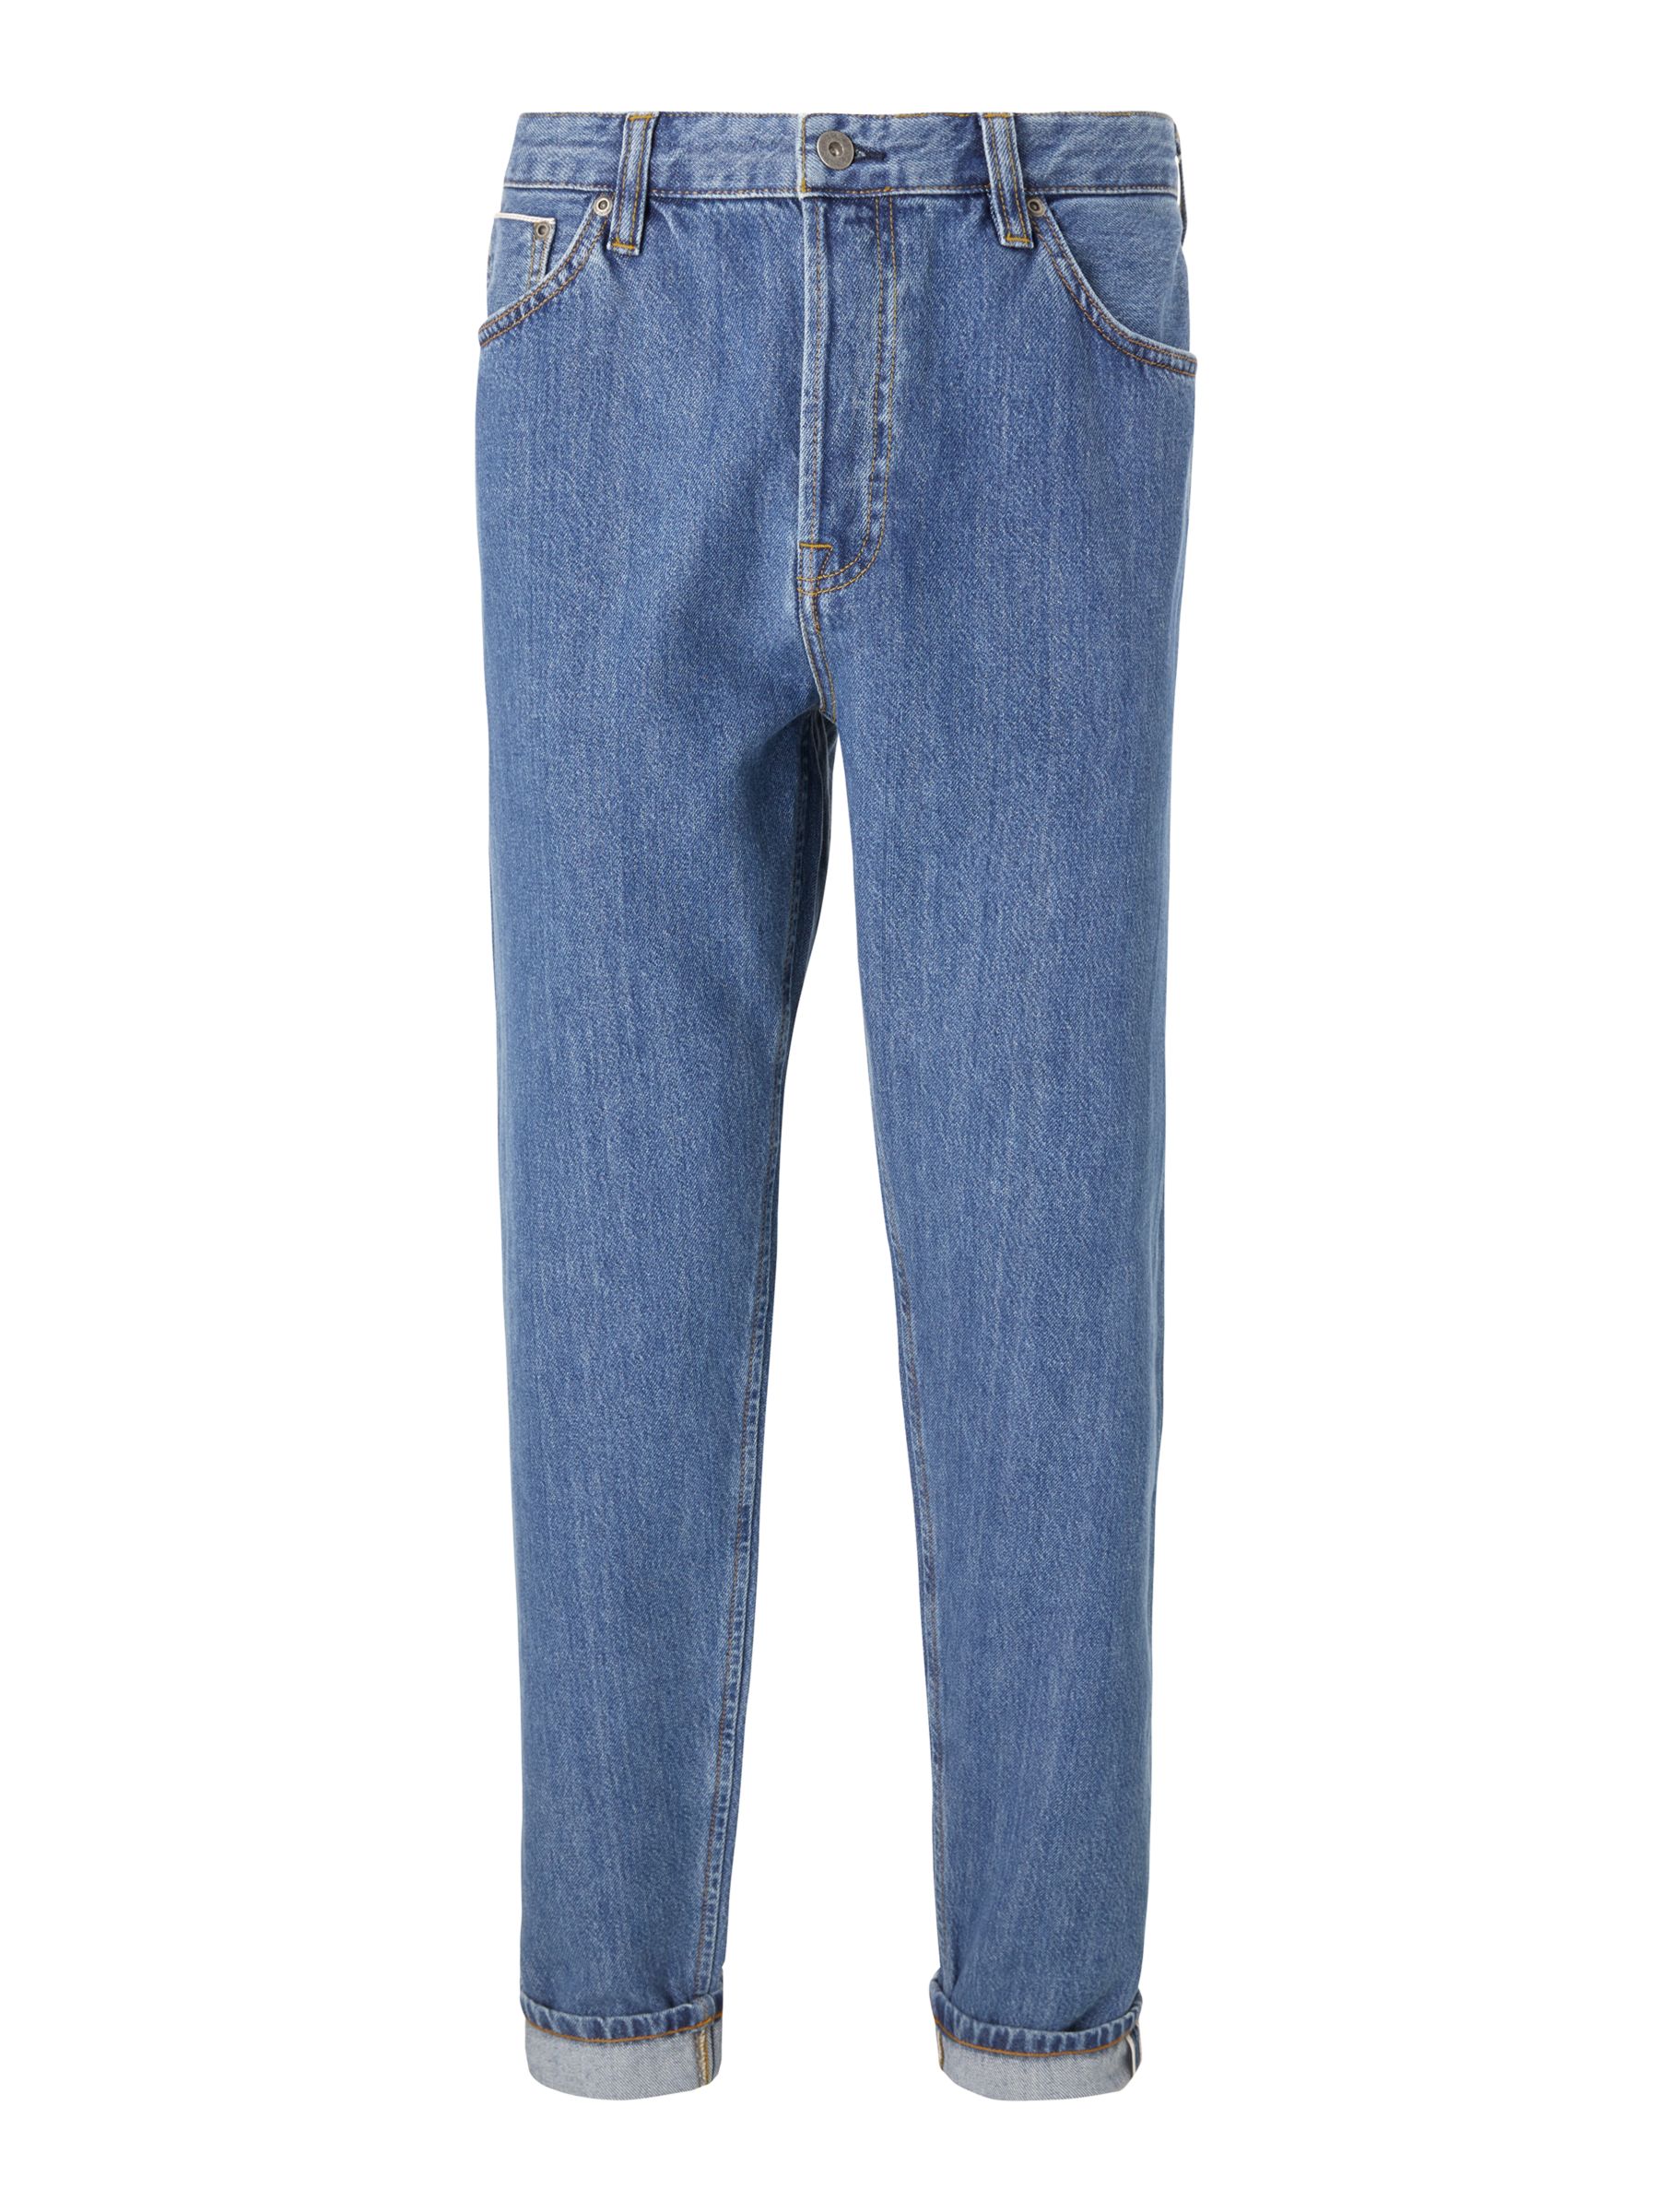 JOHN LEWIS & Co. 13.5oz Selvedge Denim Regular Tapered Fit Jeans, Mid Wash